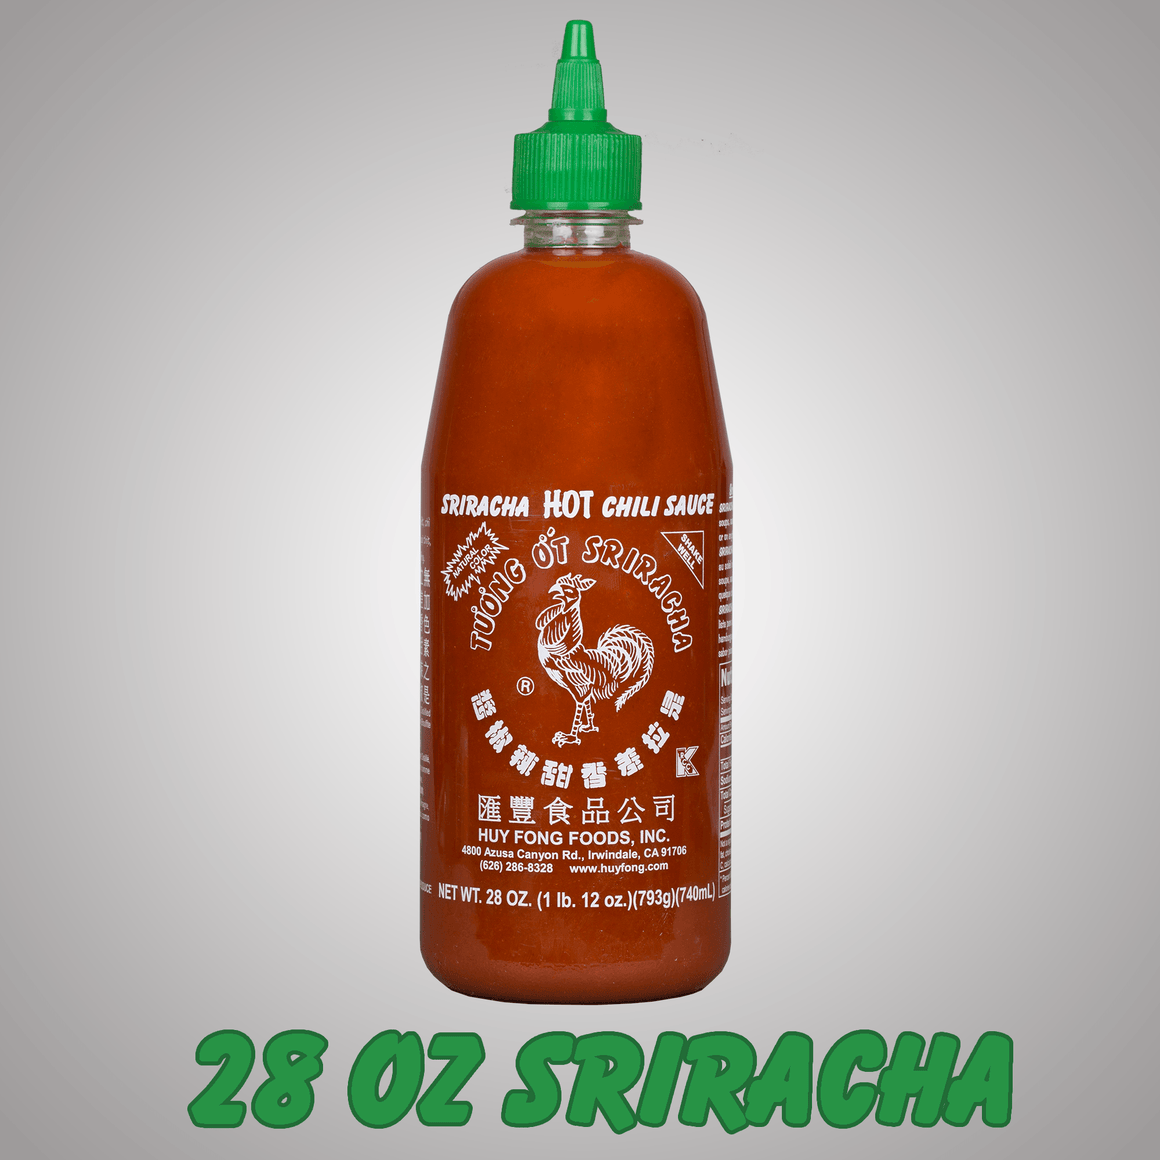 Bundles - Holy *#@%! That's Alotta Sriracha!